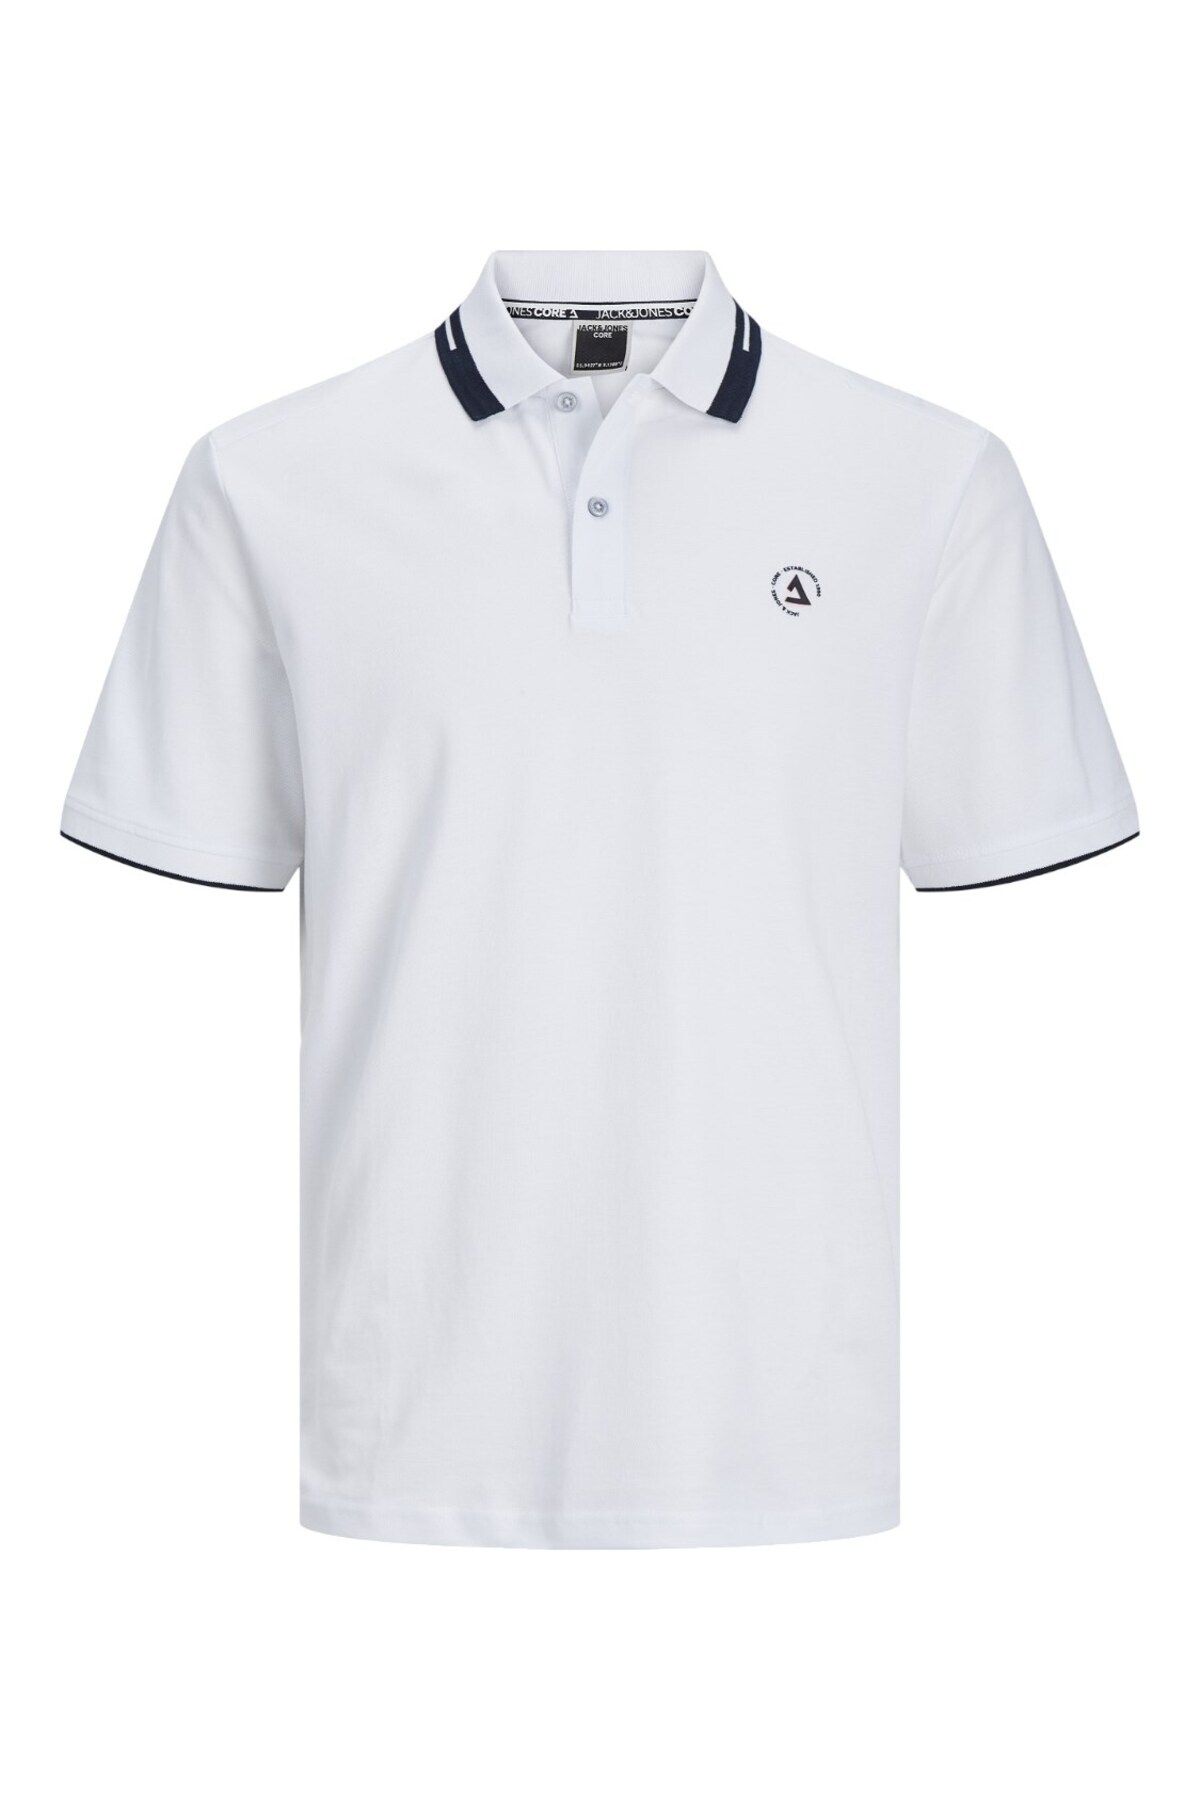 Jack & Jones Jcohass Logo Polo Ss Pls Erkek Beyaz Büyük Beden Tshirt 12257374-01